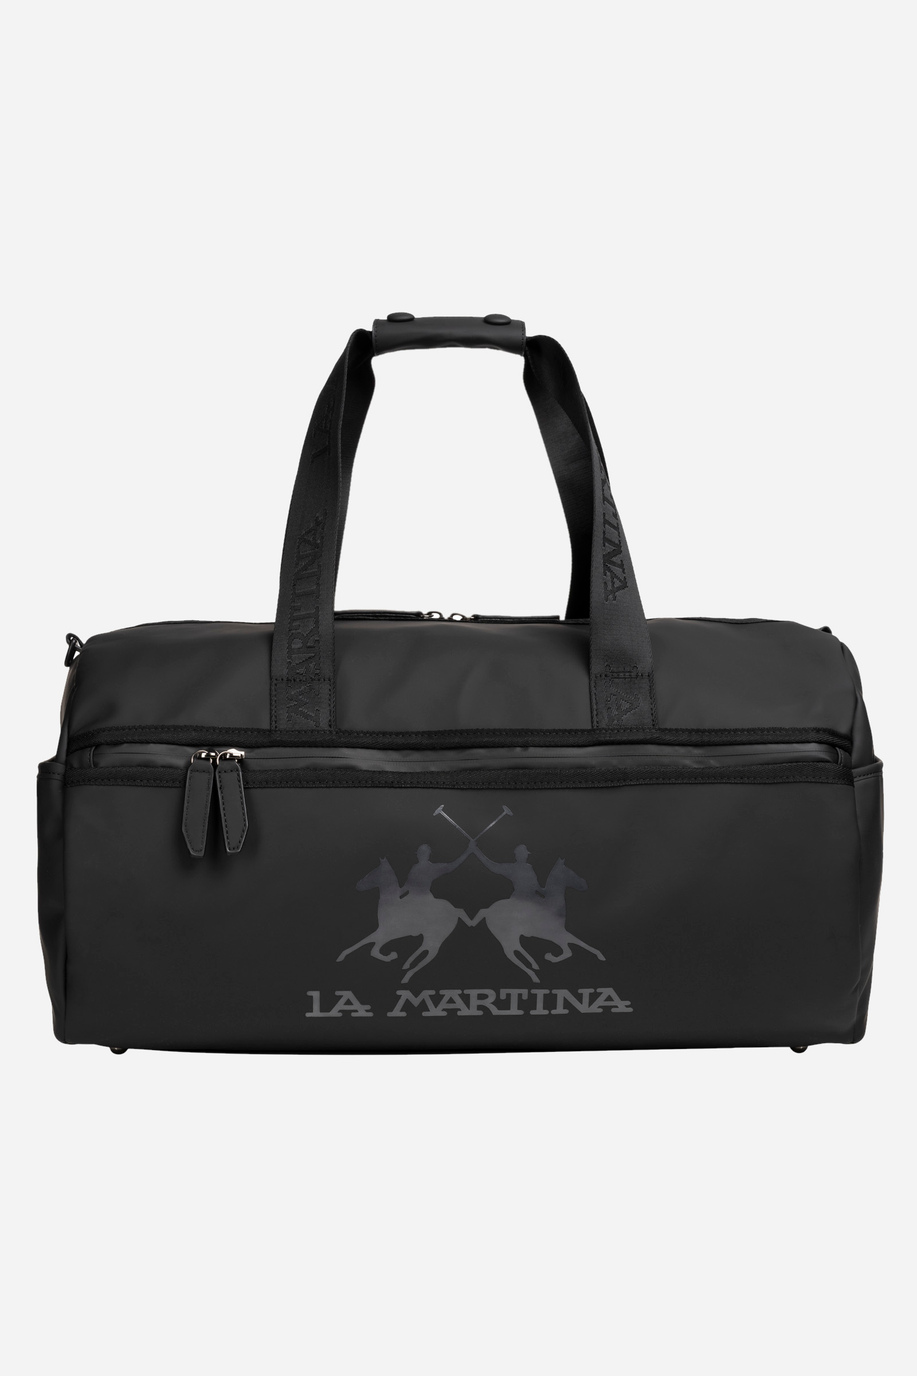 Einfarbige schwarze Tasche aus PU-Stoff - Augusto - Taschen | La Martina - Official Online Shop